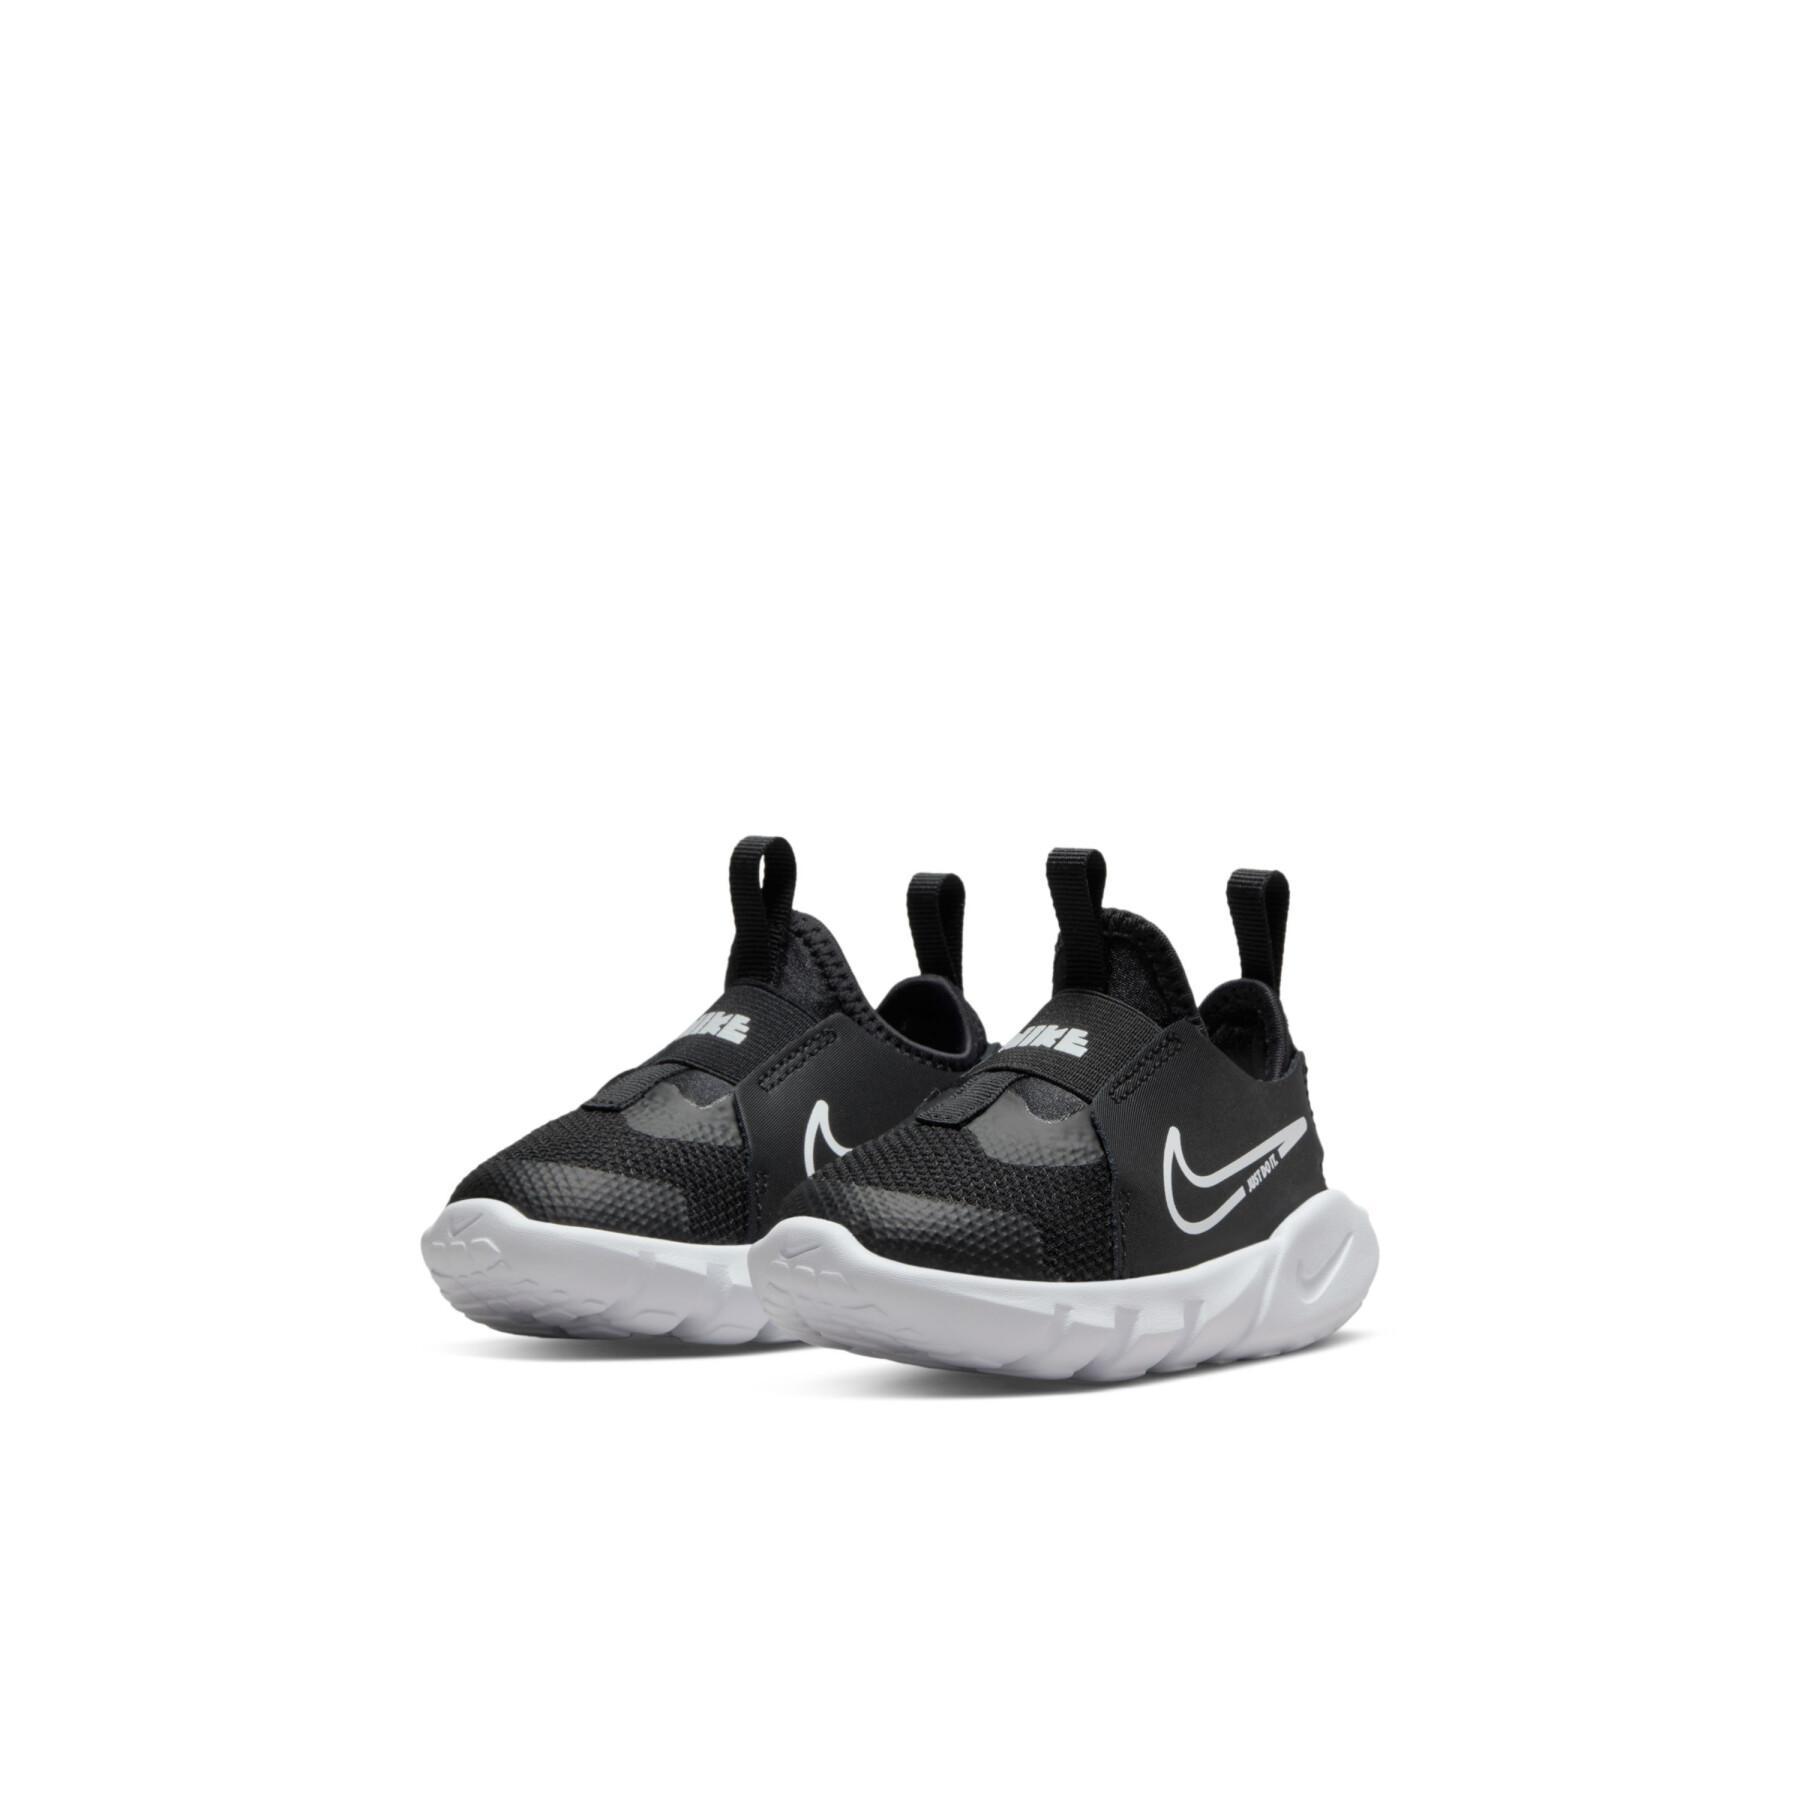 Sneakers per bambini Nike Flex Runner 2